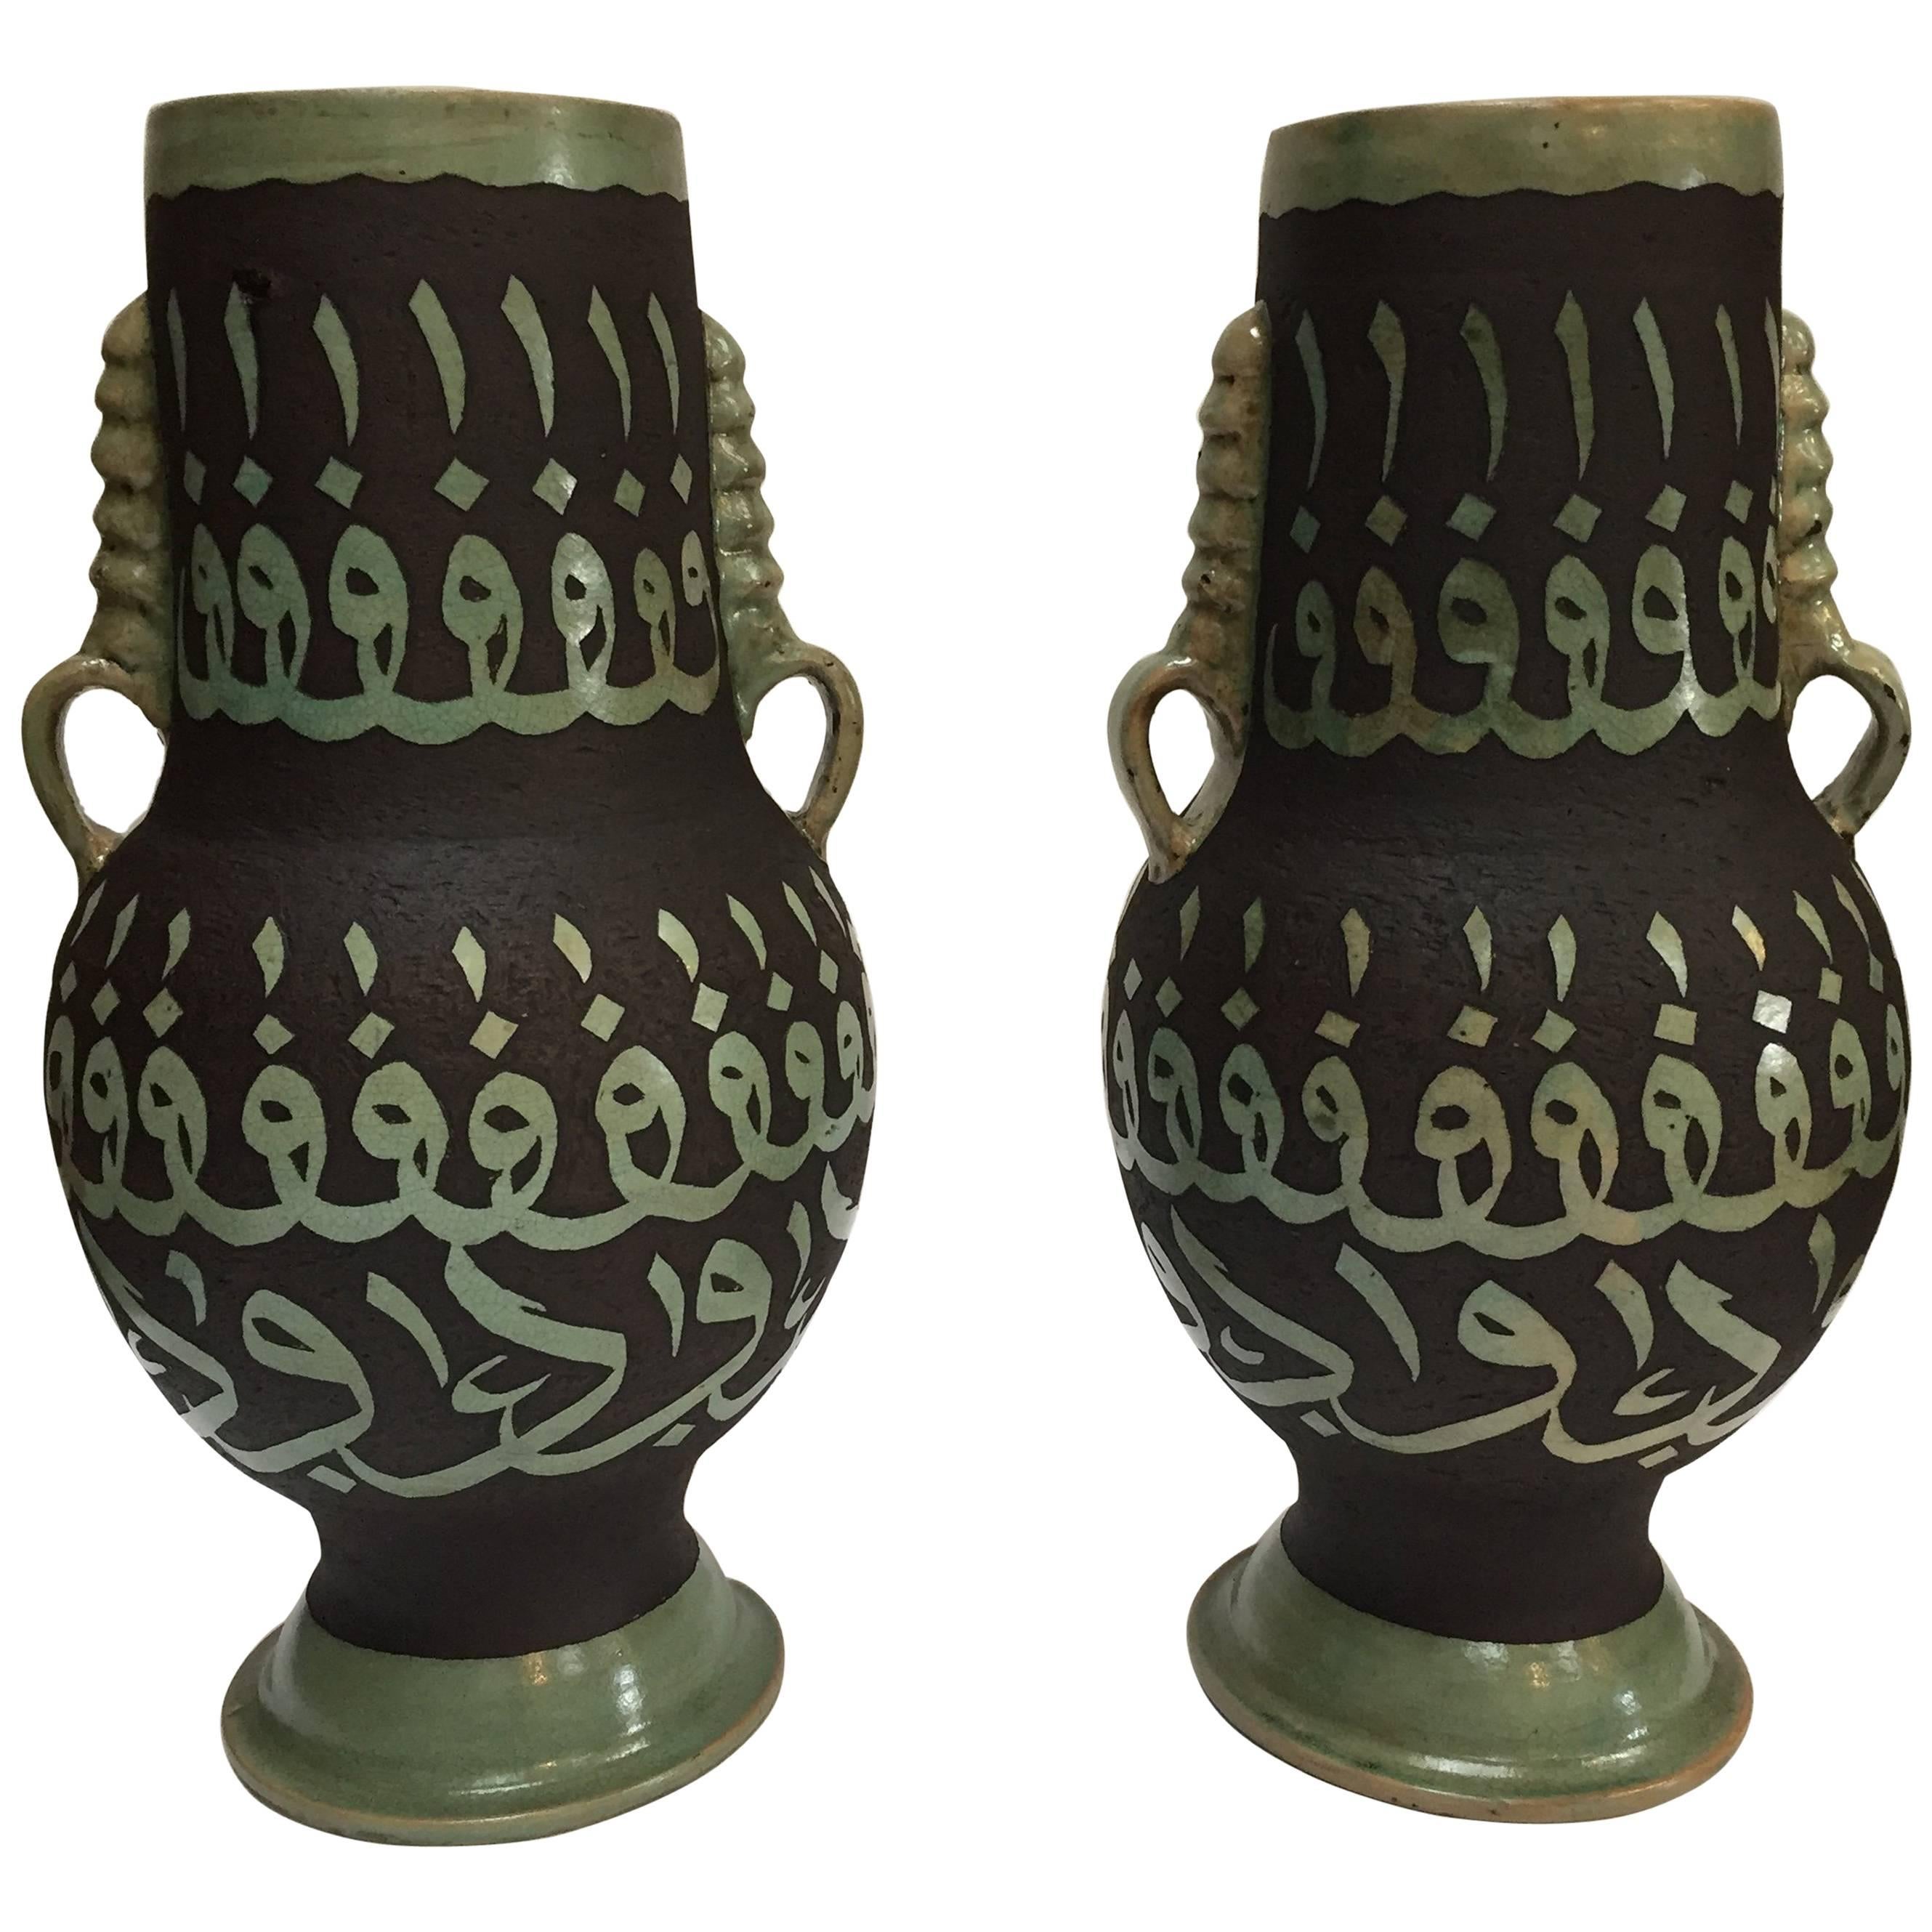 Paire de vases en céramique marocaine verte avec calligraphie arabe ciselée et écriture en vente